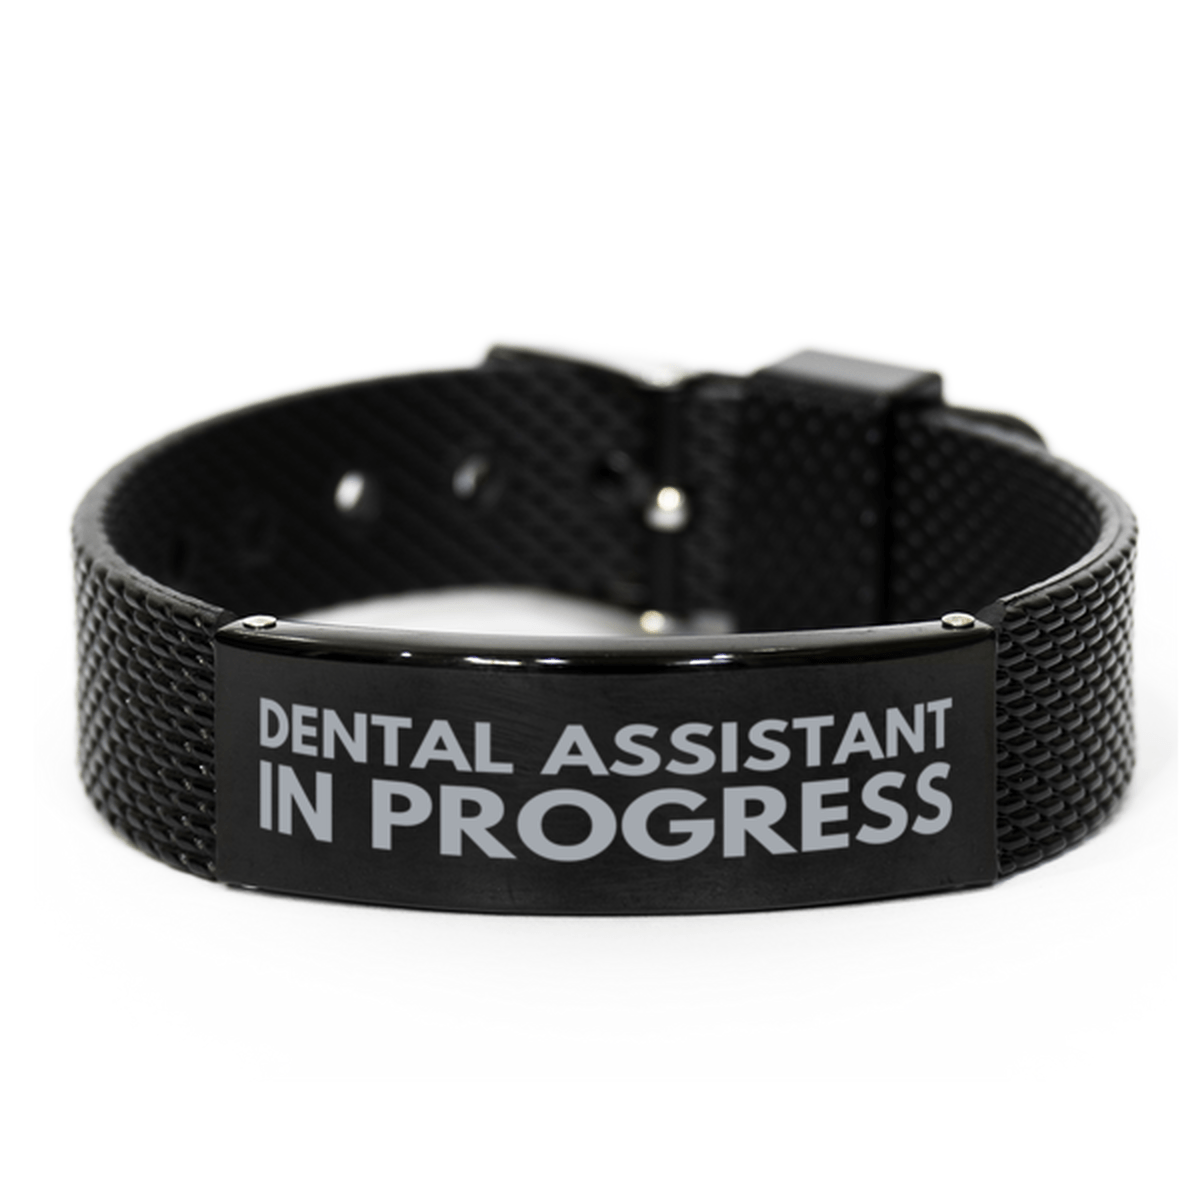 Inspirational Dental Assistant Black Shark Mesh Bracelet, Dental Assistant In Progress, Best Graduation Gifts for Students